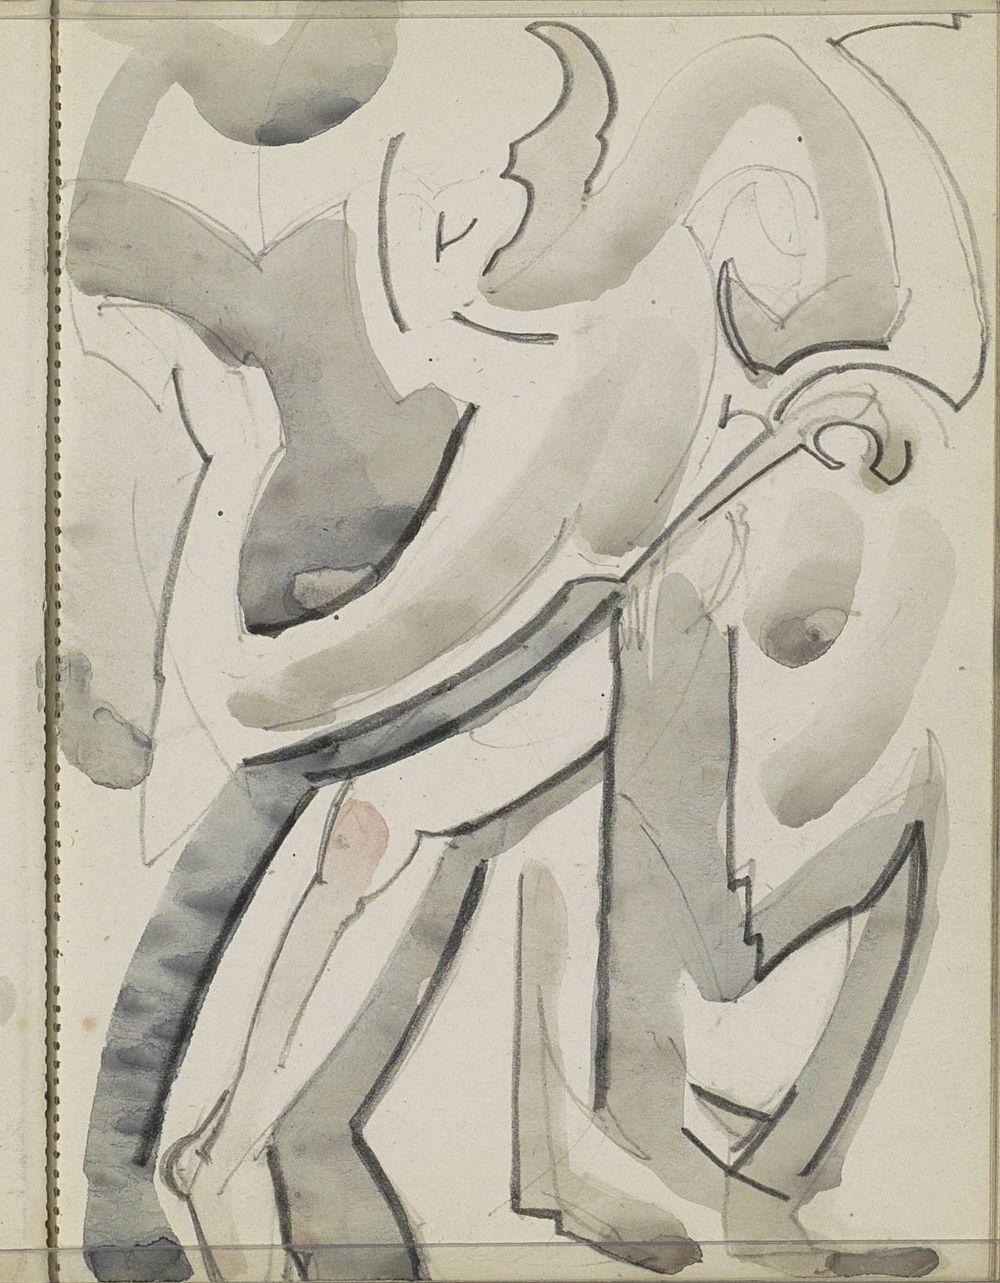 Danser (1906 - 1945) by Reijer Stolk